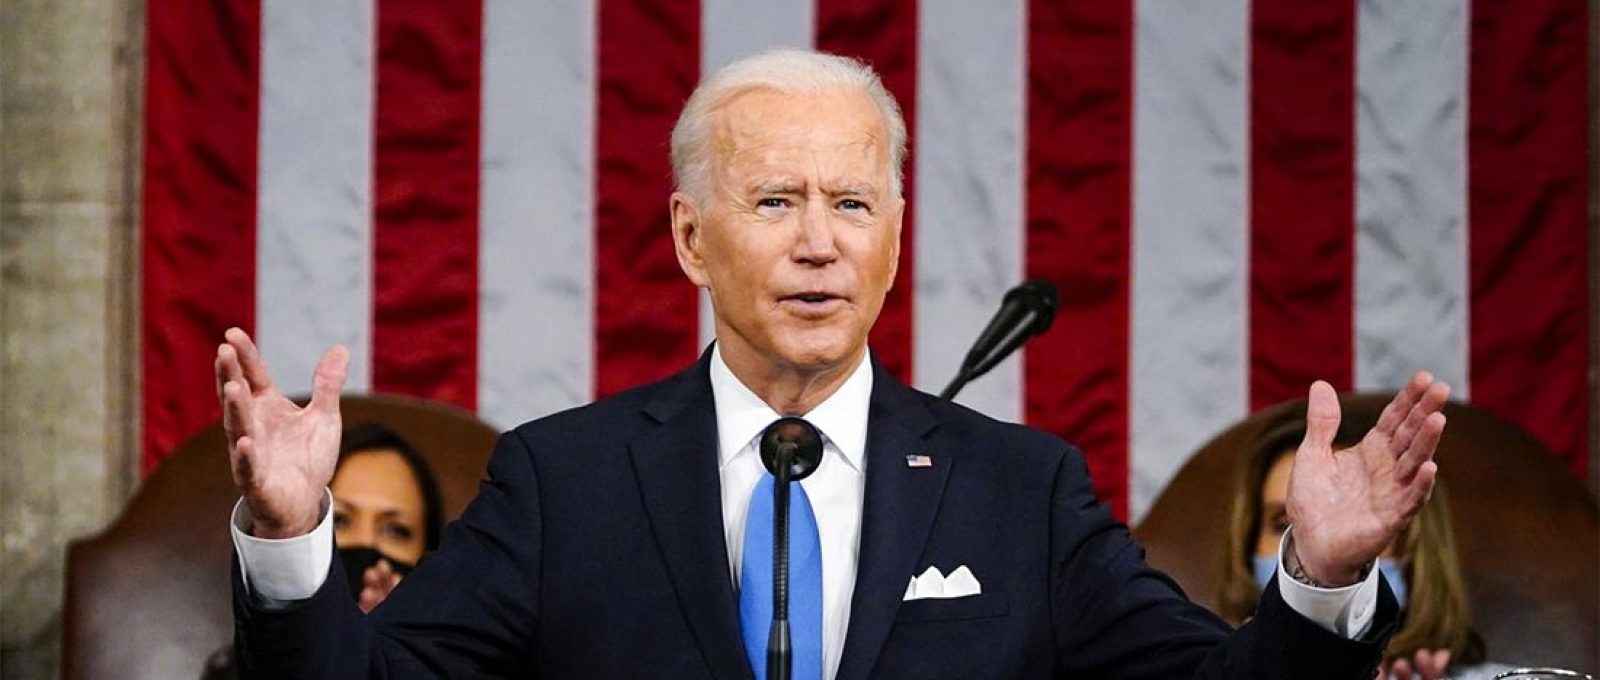 O presidente dos EUA, Joe Biden, discursa em sessão conjunta do Congresso americano em 28 de abril de 2021 (Foto: Associated Press).